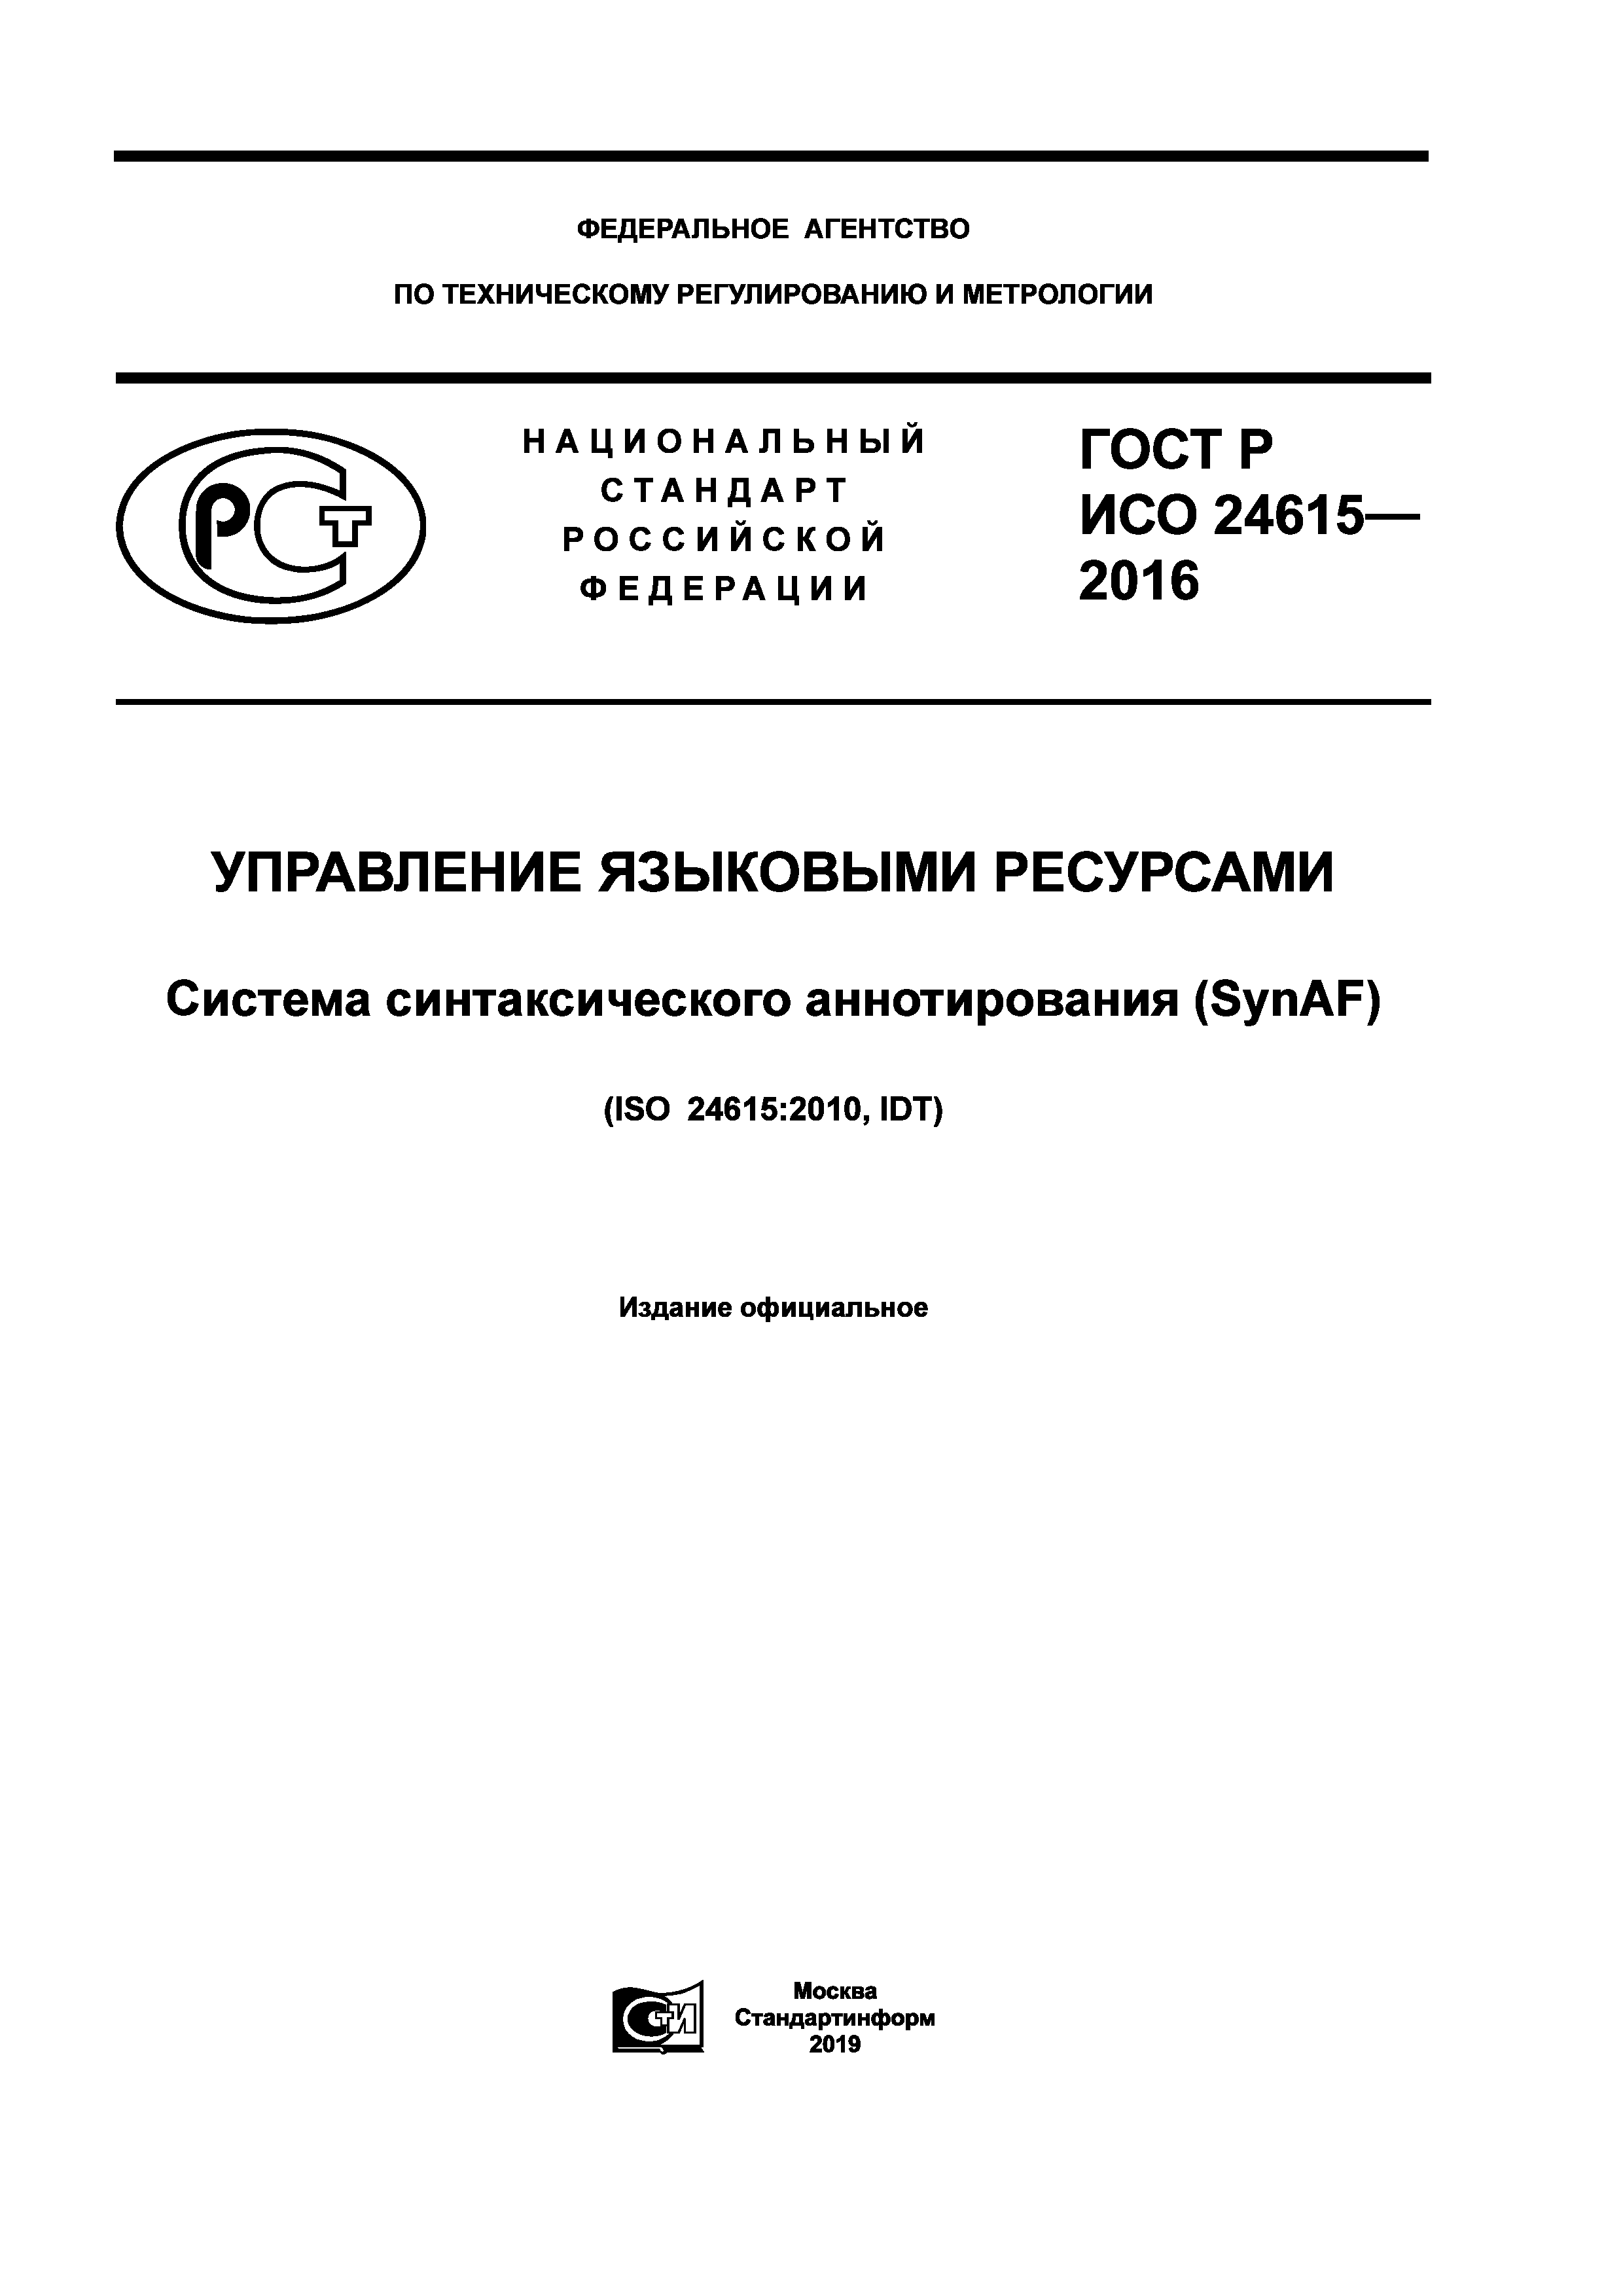 ГОСТ Р ИСО 24615-2016